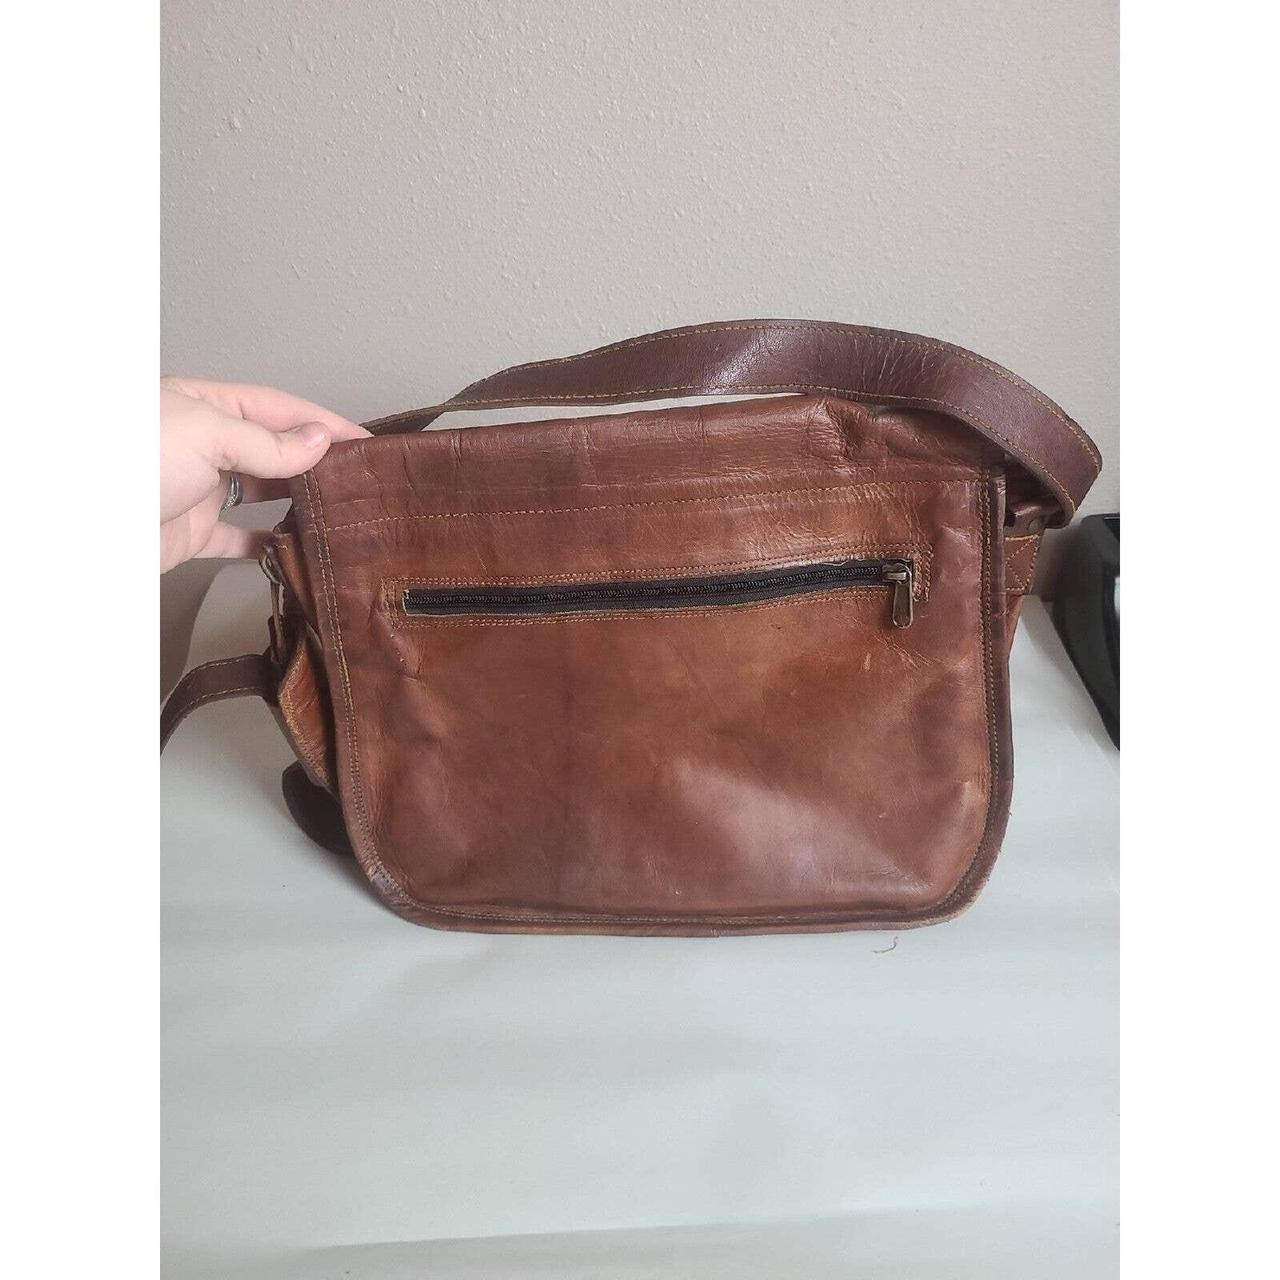 Leather Bag, Messenger Bag, Laptop Bag, Pure Leather Bag, Genuine Leather,  Handmade, Vintage